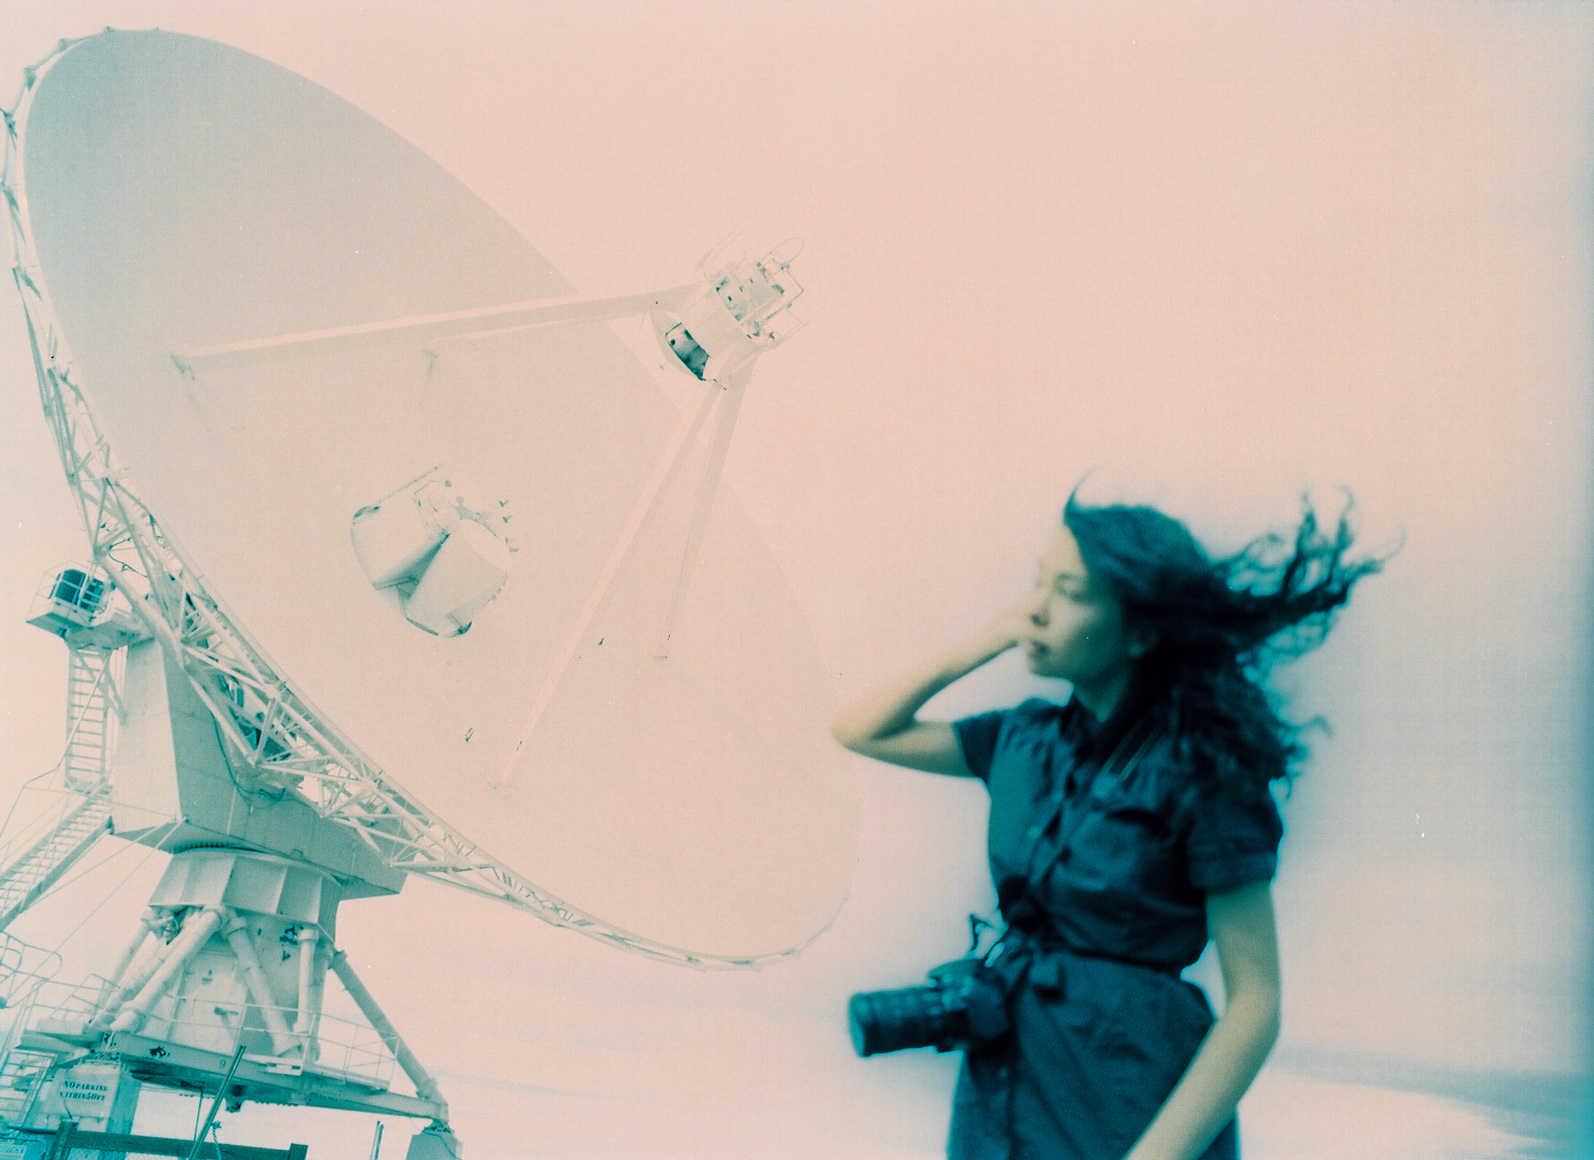 Shelly and radio telescope.